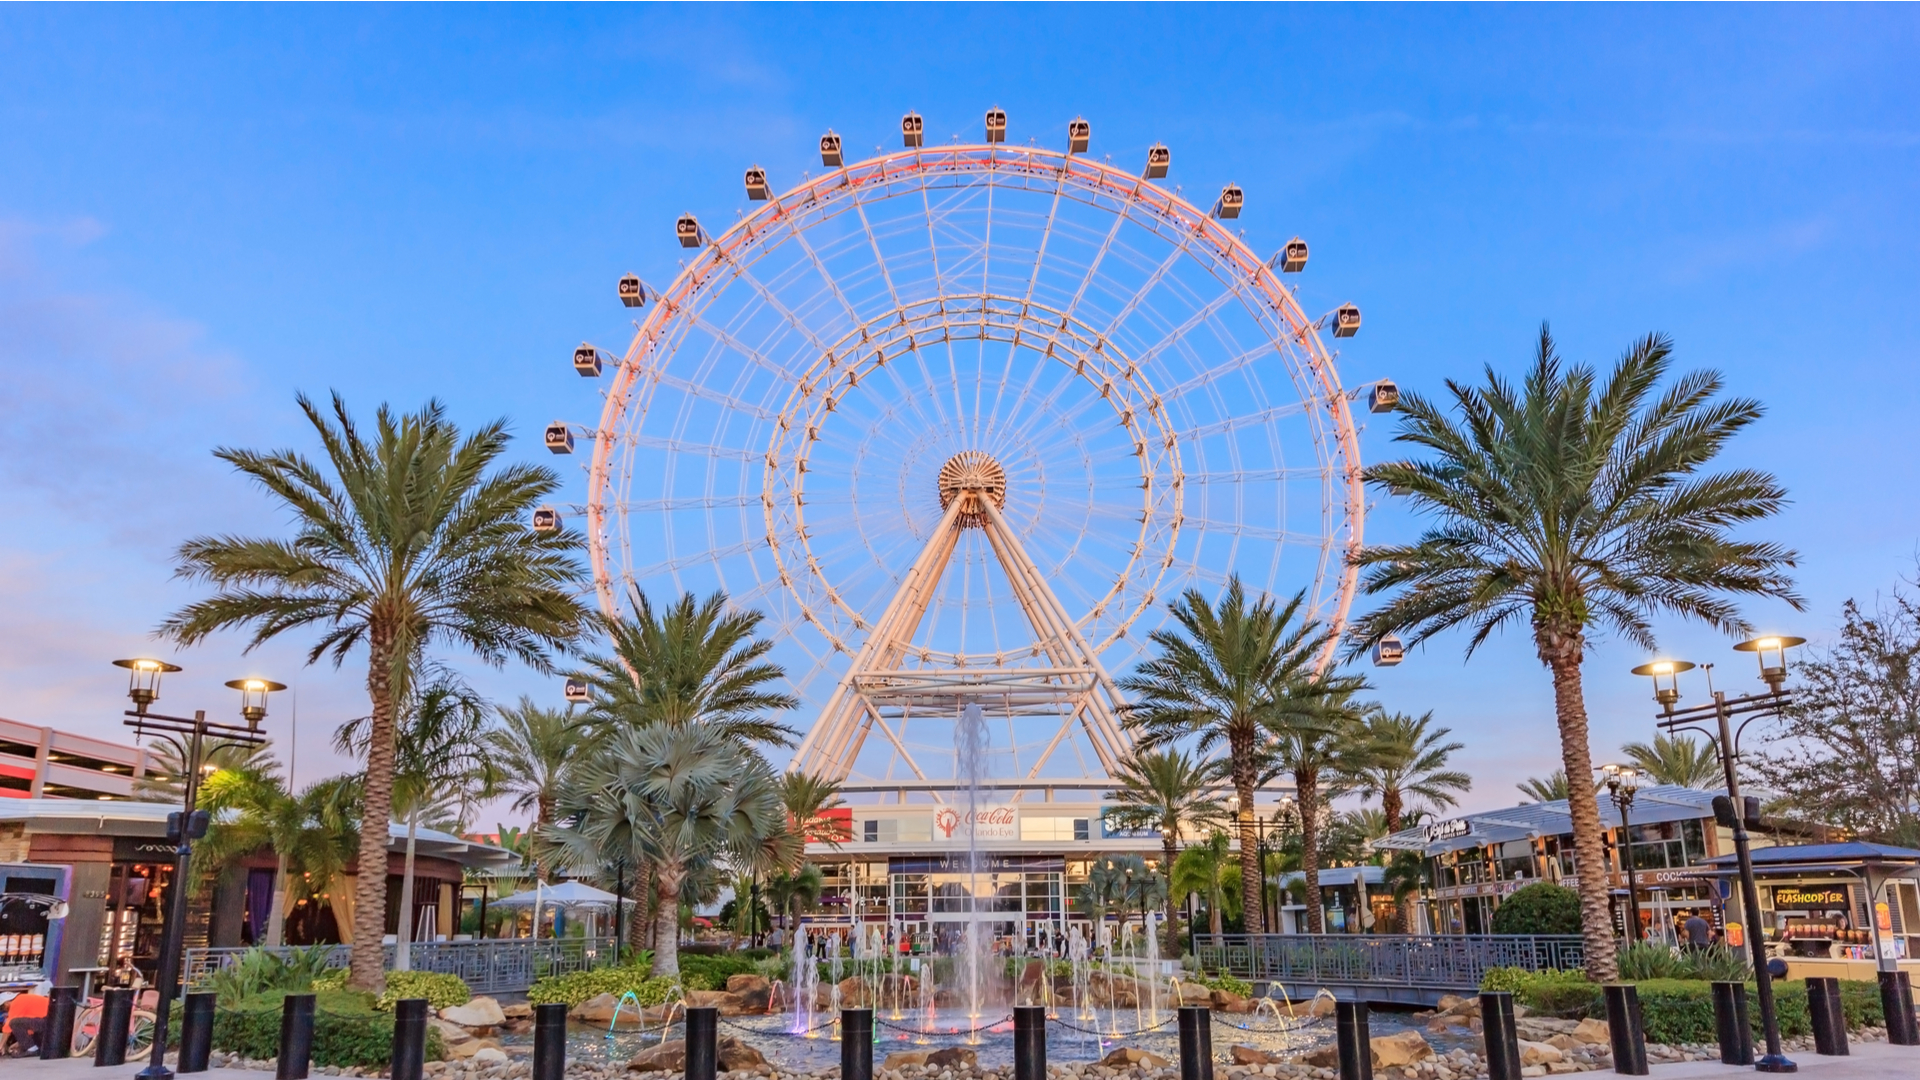 O que fazer em Orlando: pontos turísticos e passeios | Orlando Eye | Conexão123